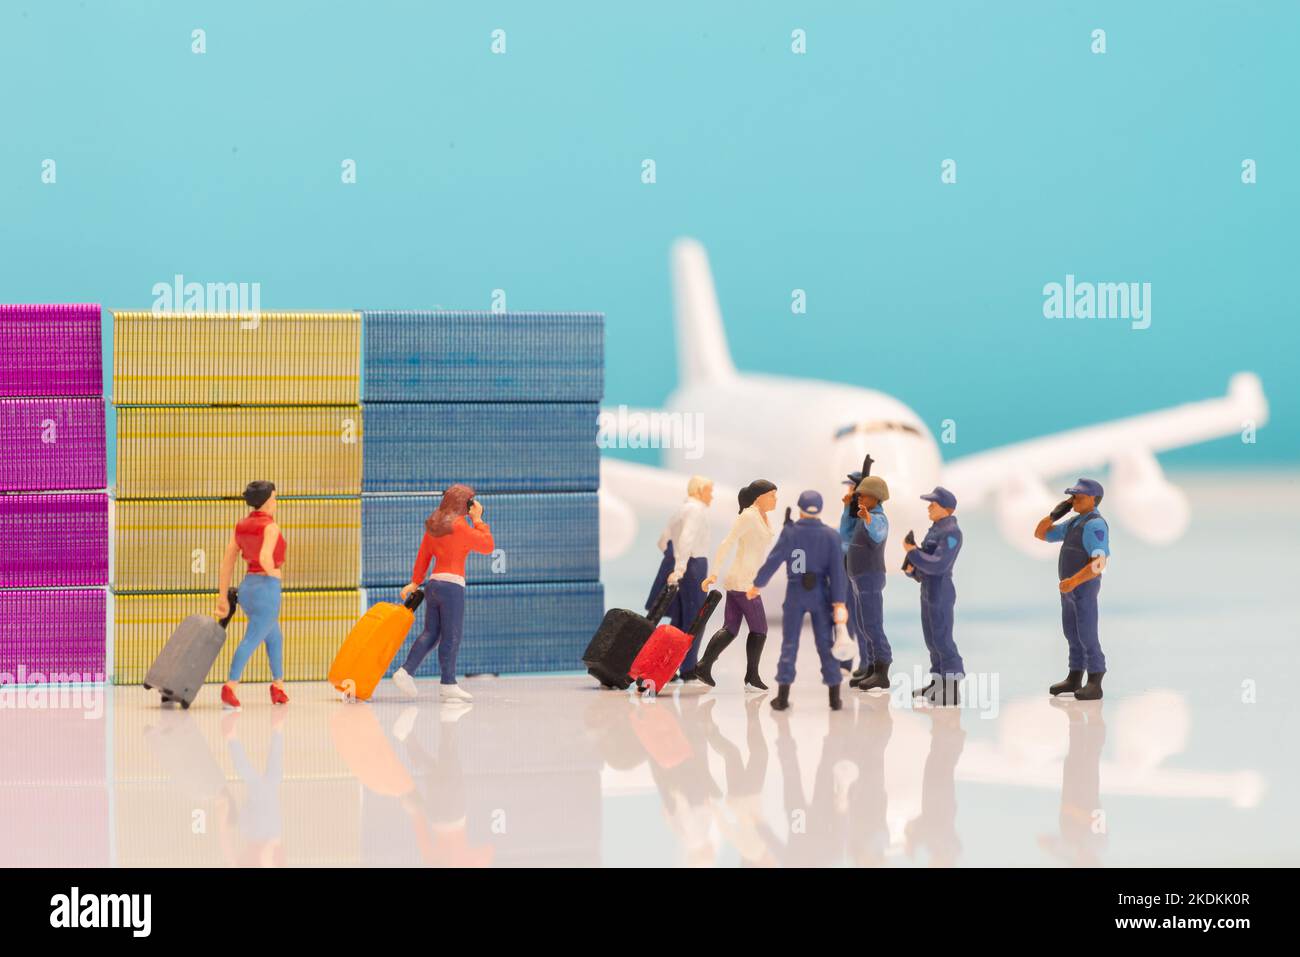 ILLUSTRATIVE EDITORIAL - Sicherheit Flugreisebeschränkungen Konzeptbilder - Miniatur-Spielzeugfiguren von Polizisten oder Grenzpatrouillenbeamten, die den Pass stoppen Stockfoto